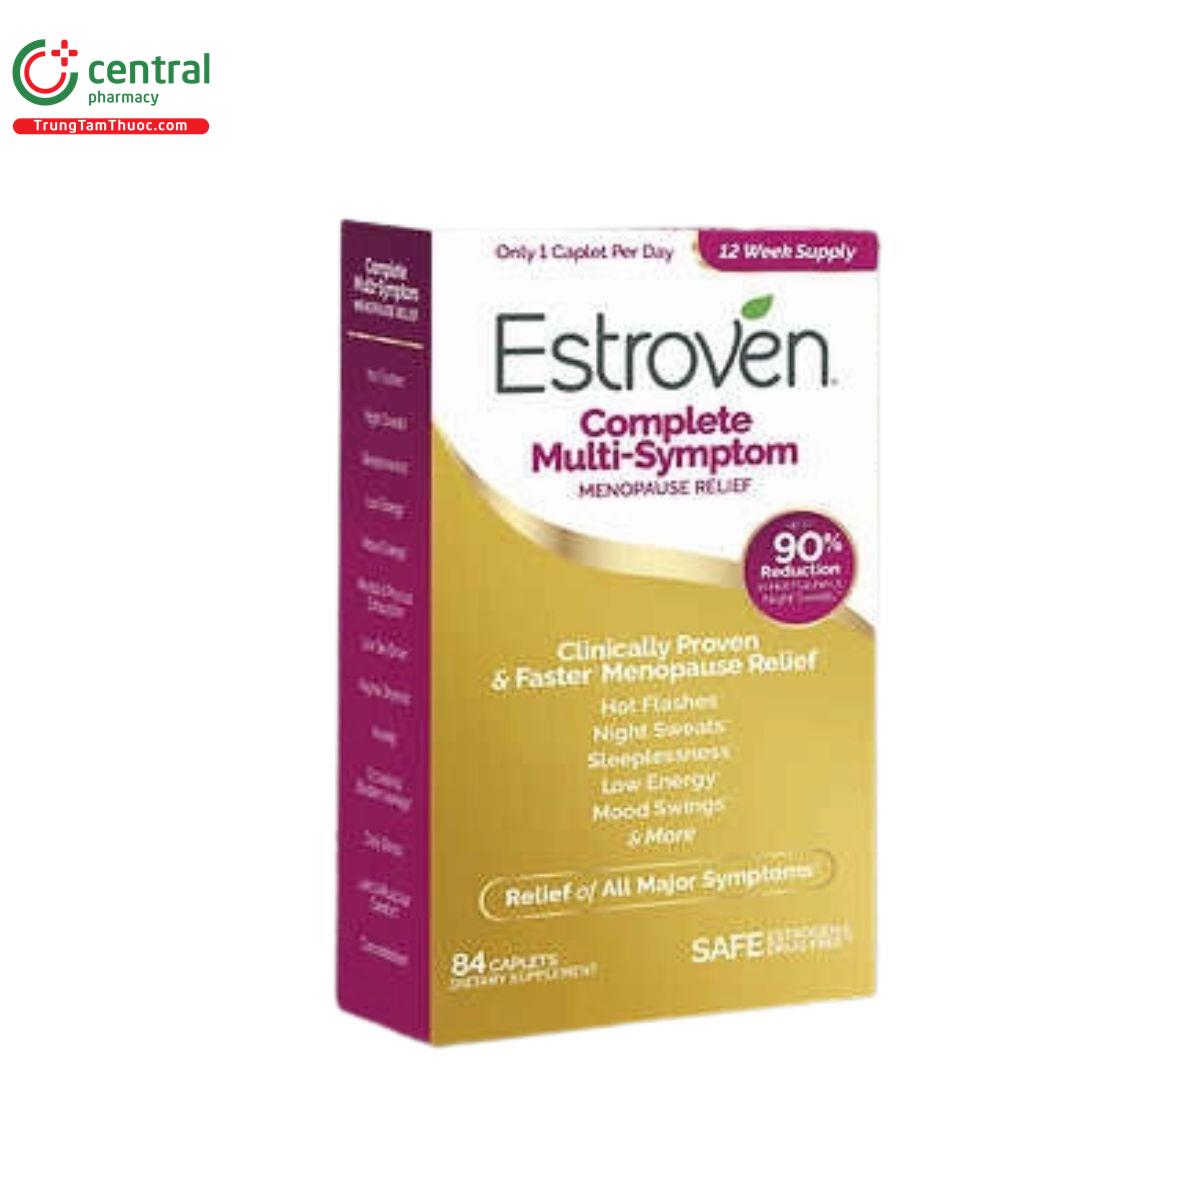 estroven complete multi symptom 5 S7627